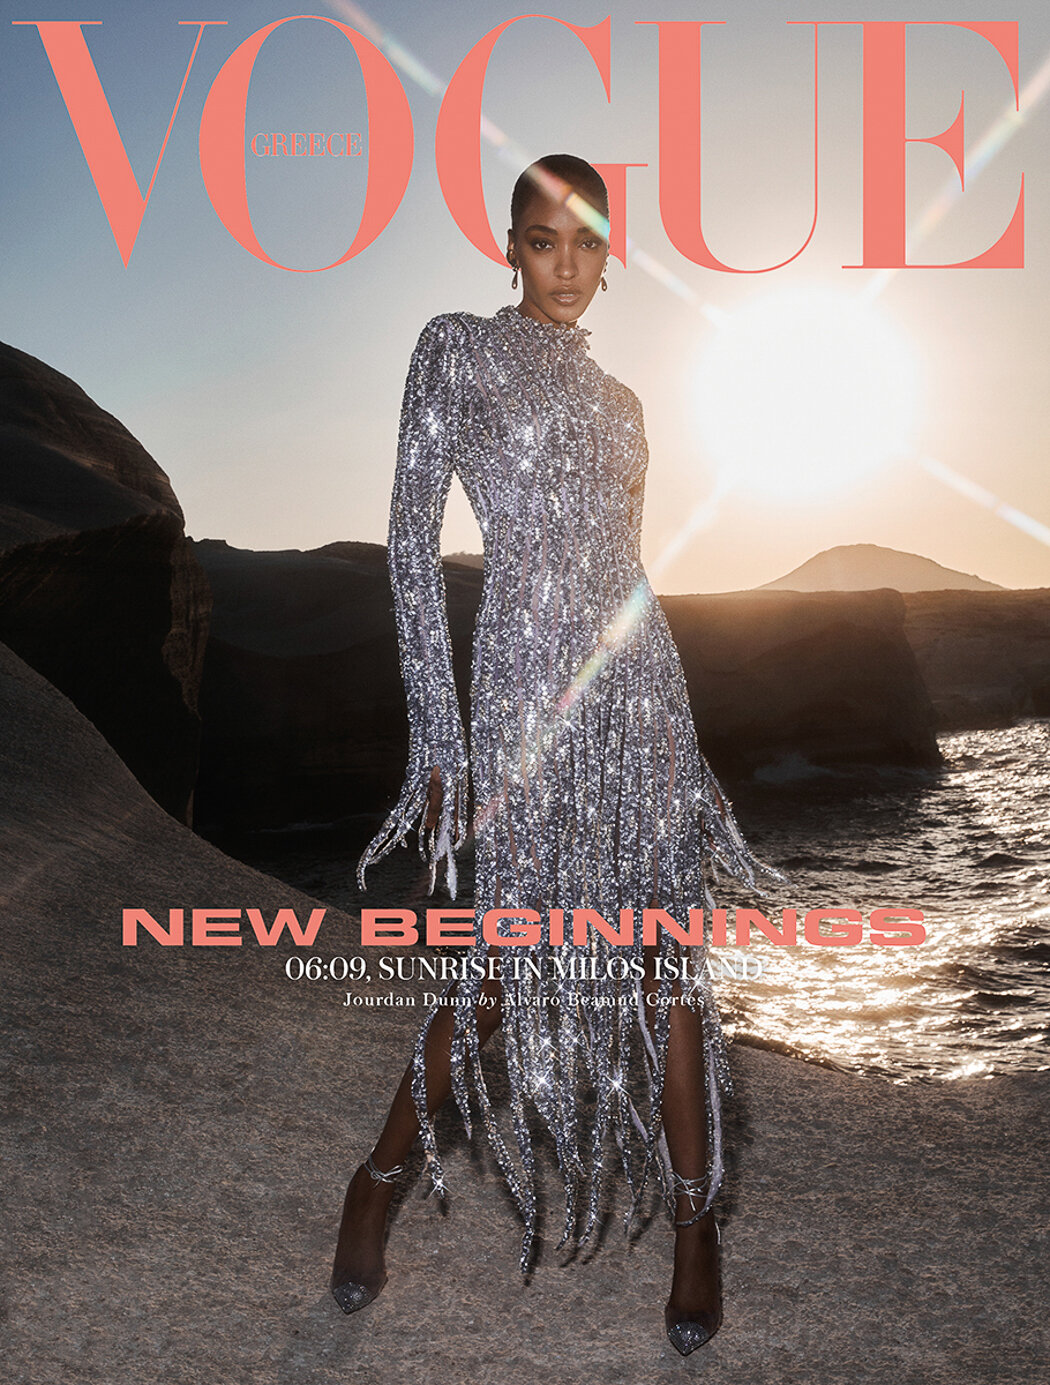 Jourdan-Dunn-by-Alvaro-Beamud-Cortes-in-Vogue Greece-September-2021 (1).jpg